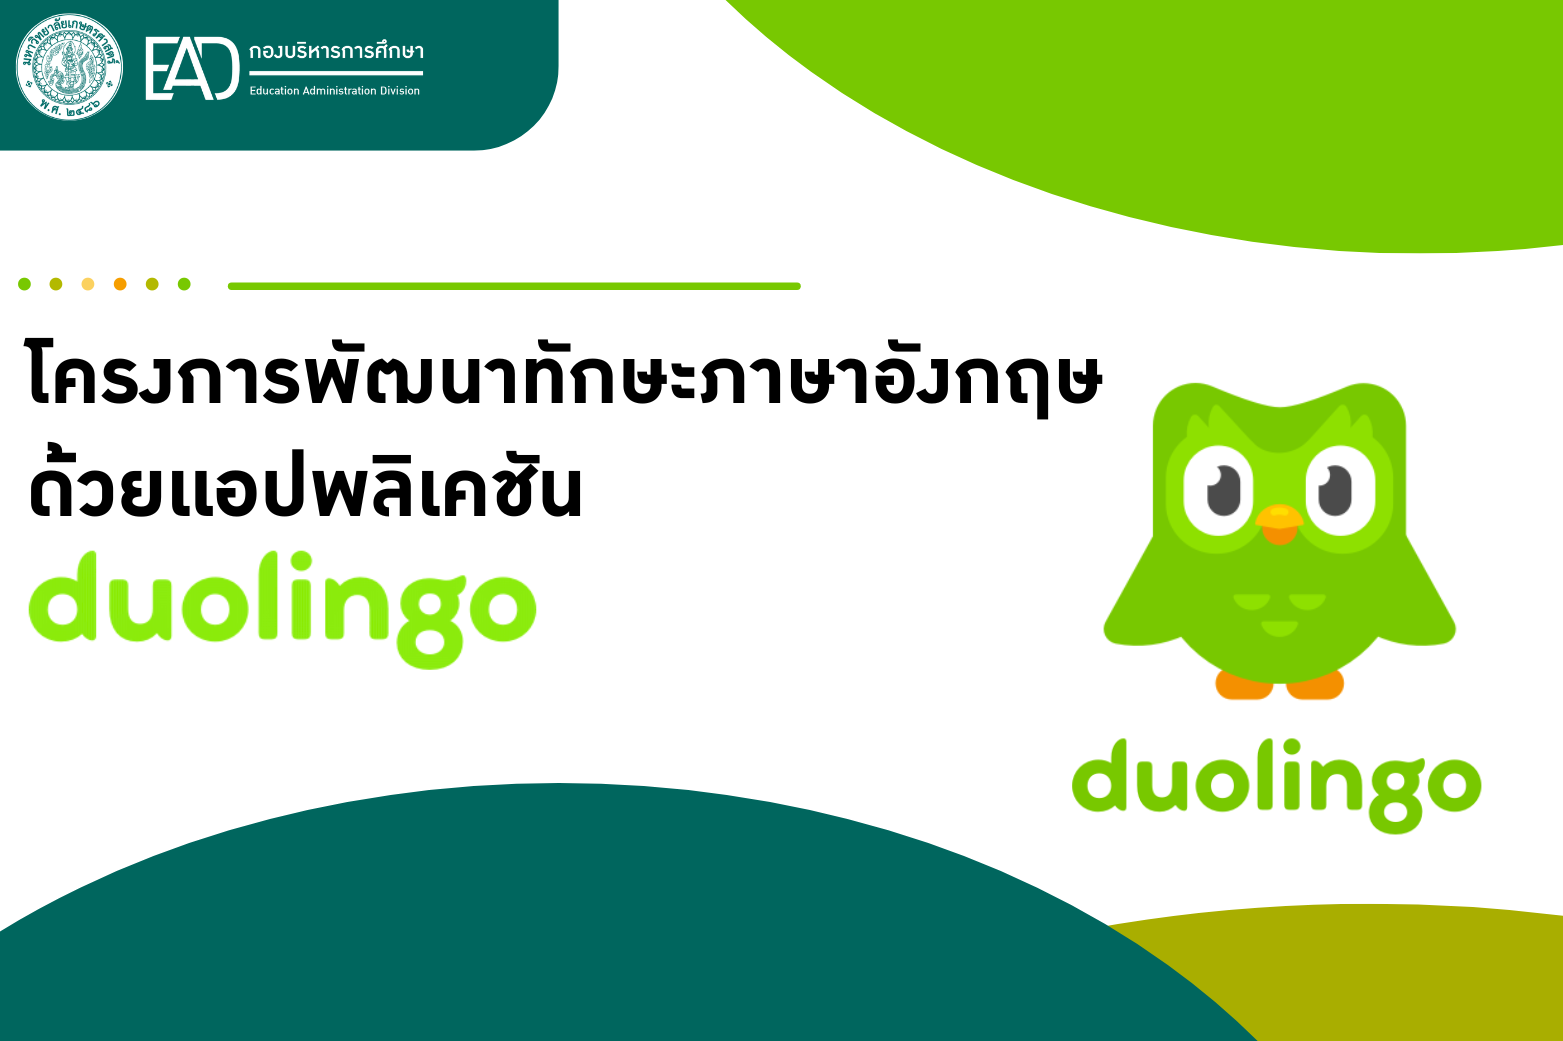 โครงการพัฒนาทักษะภาษาอังกฤษด้วยแอปพลิเคชั่น duolingo